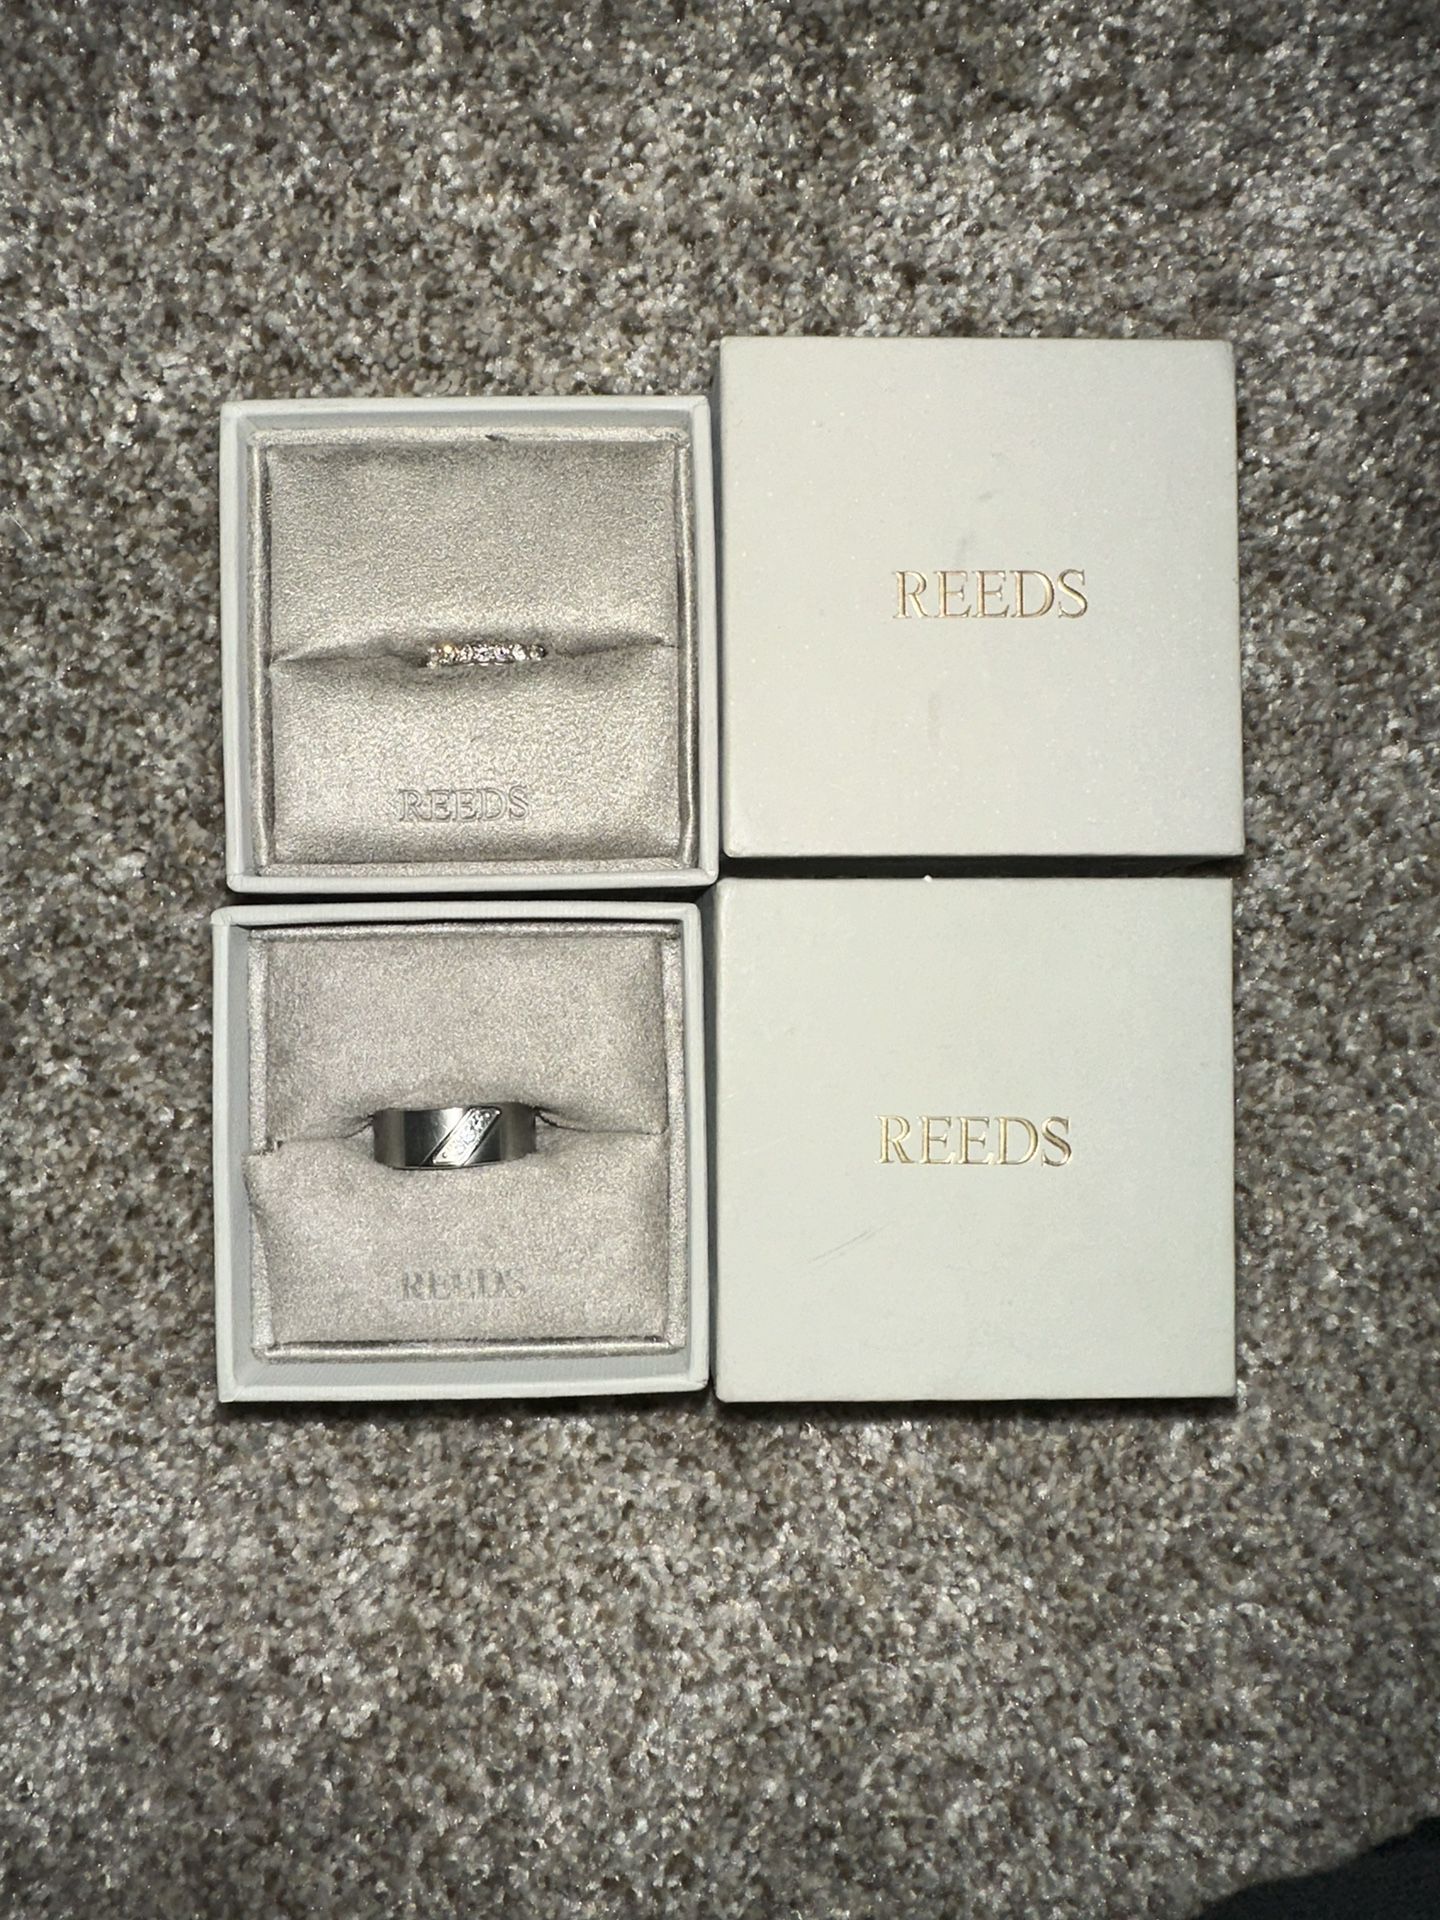 Wedding Rings Set 